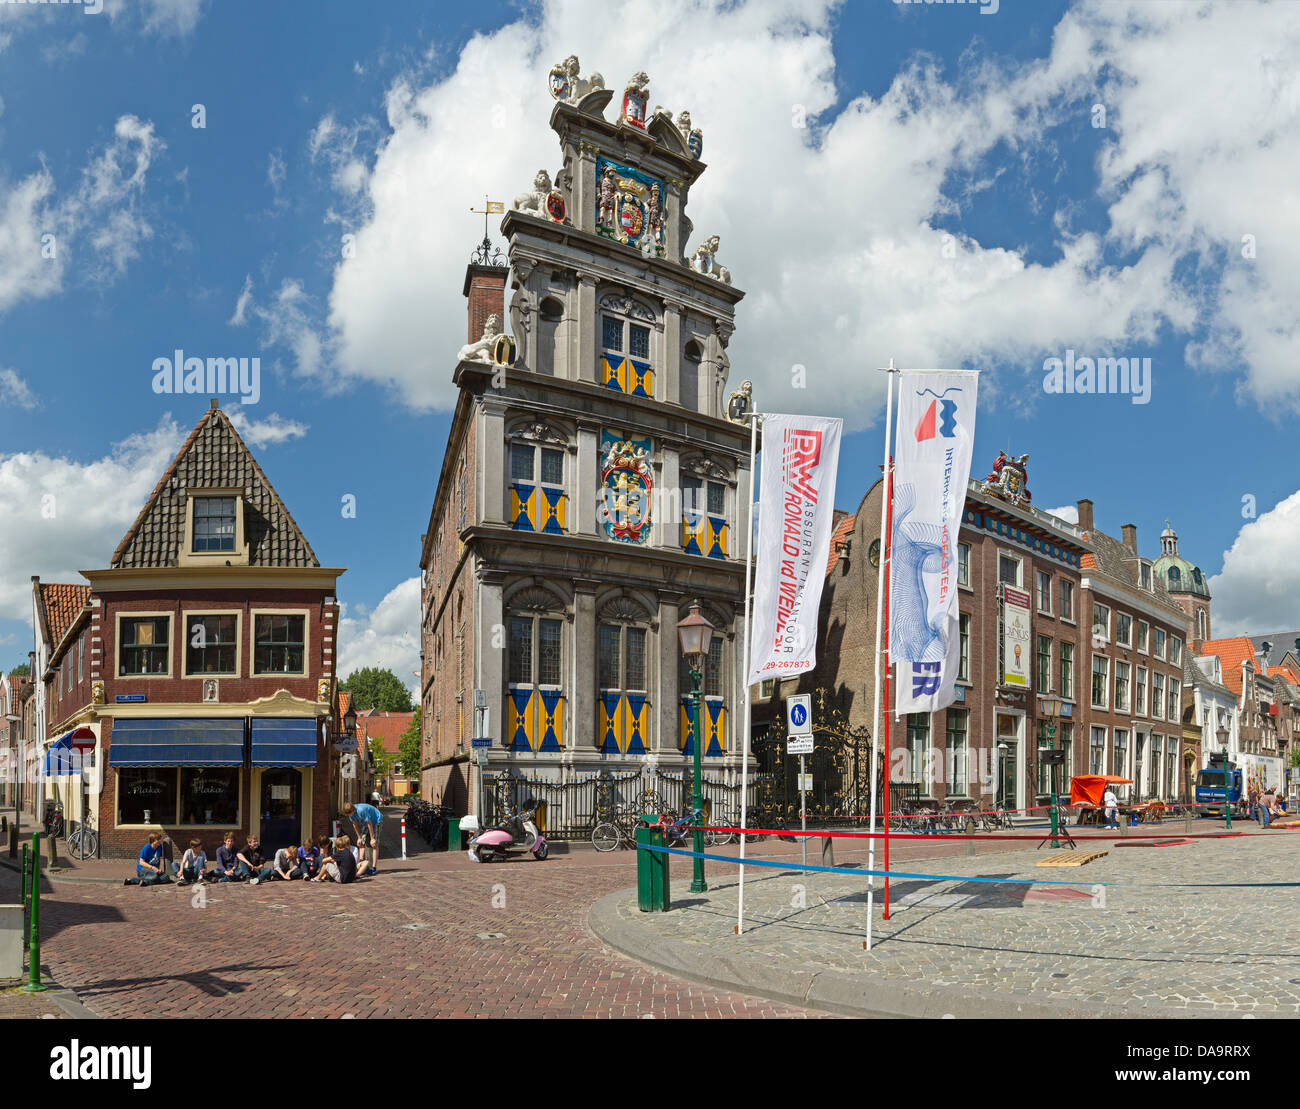 Paesi Bassi, Olanda, Europa, Hoorn, Westfrysian, museo, città, villaggio, estate, persone Foto Stock